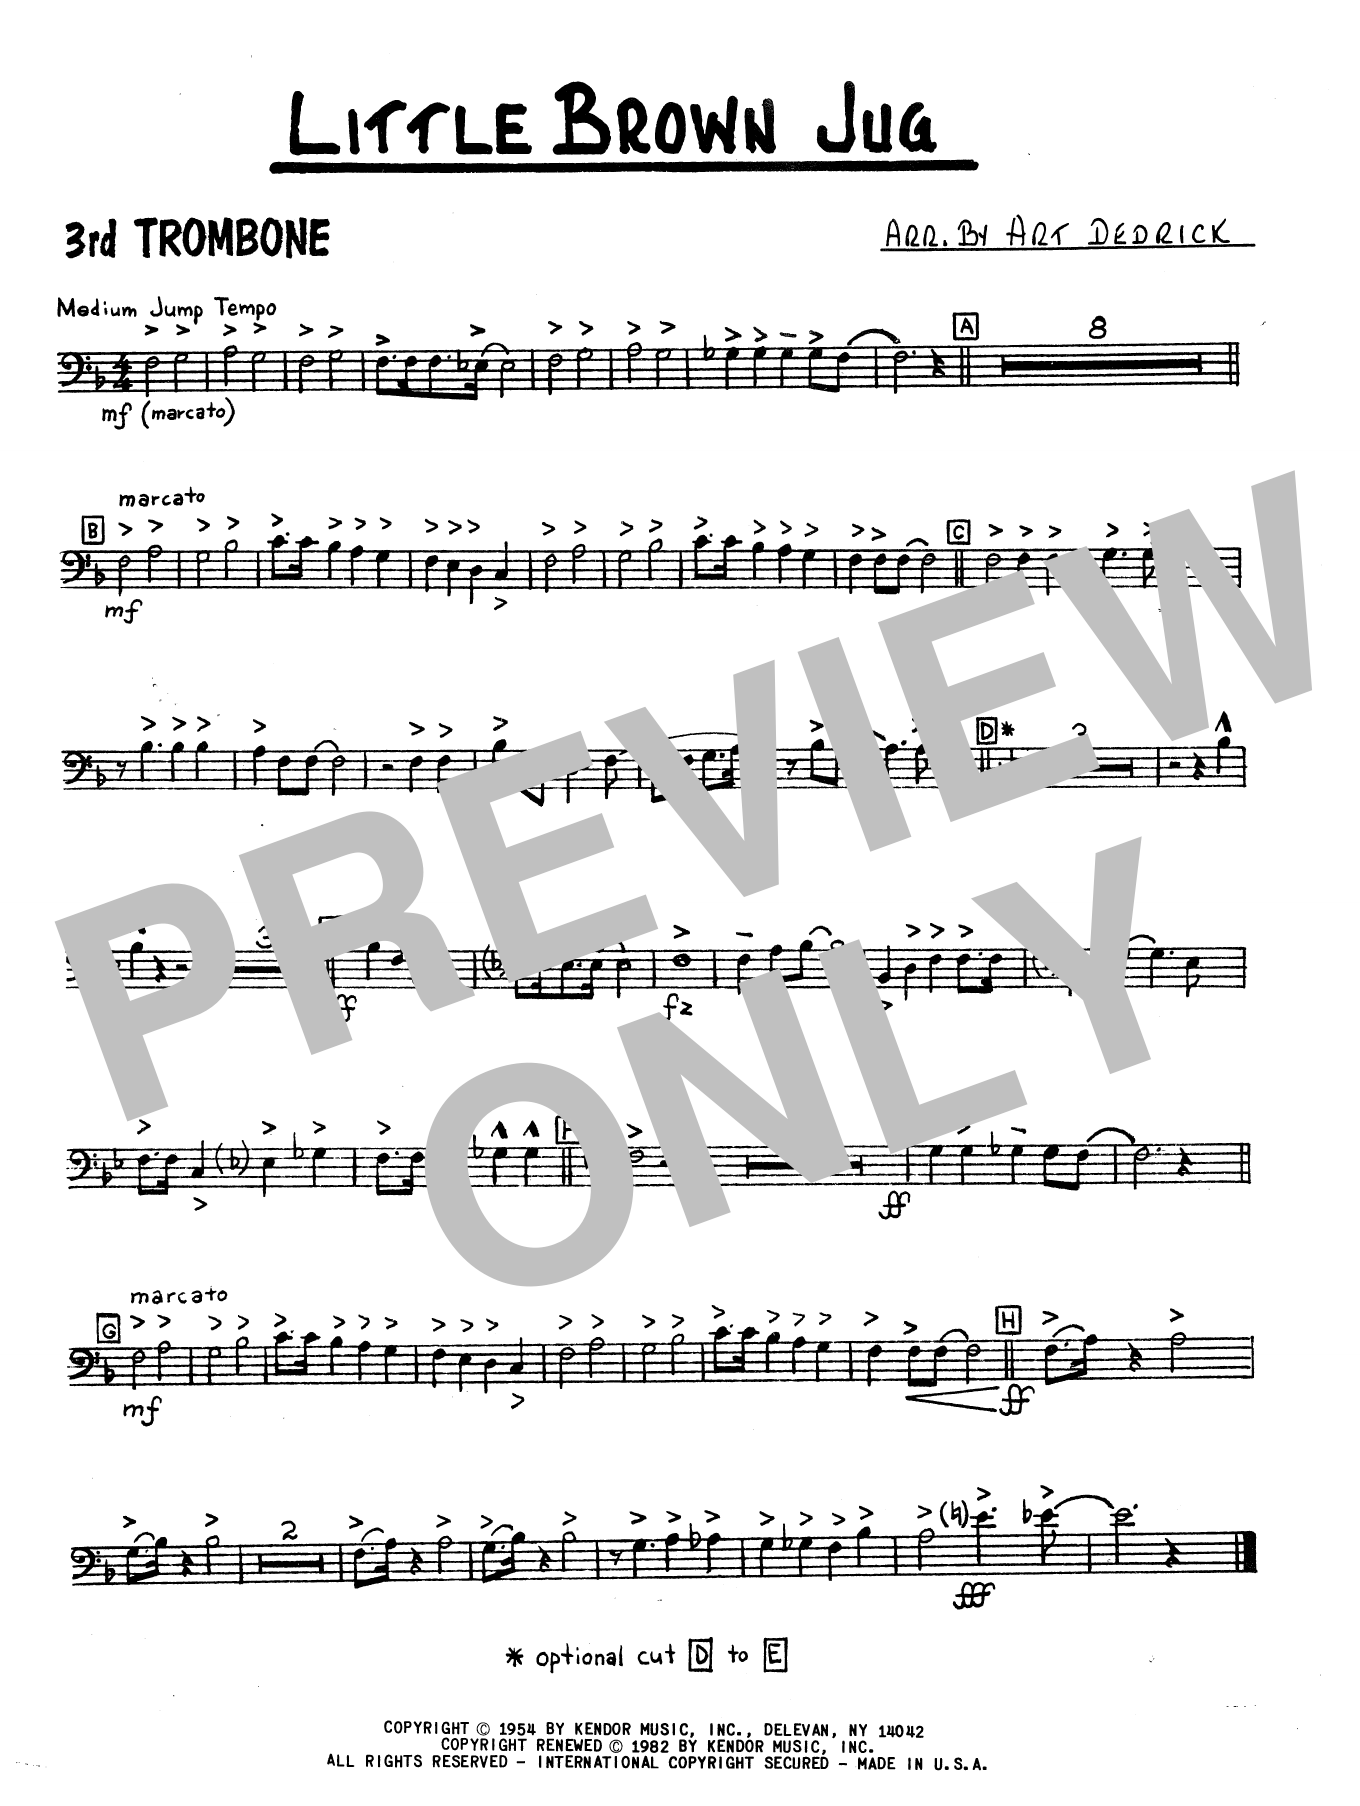 Download Art Dedrick Little Brown Jug - 3rd Trombone Sheet Music